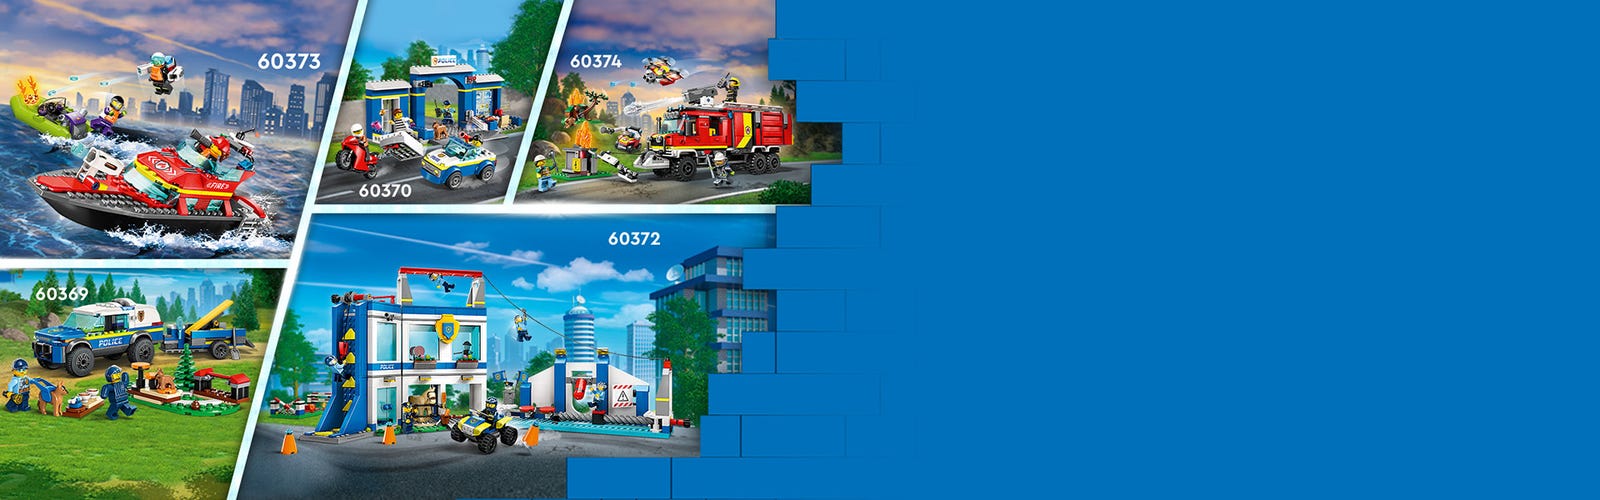 LEGO City 60373 Le Bateau de Sauvetage des Pompiers